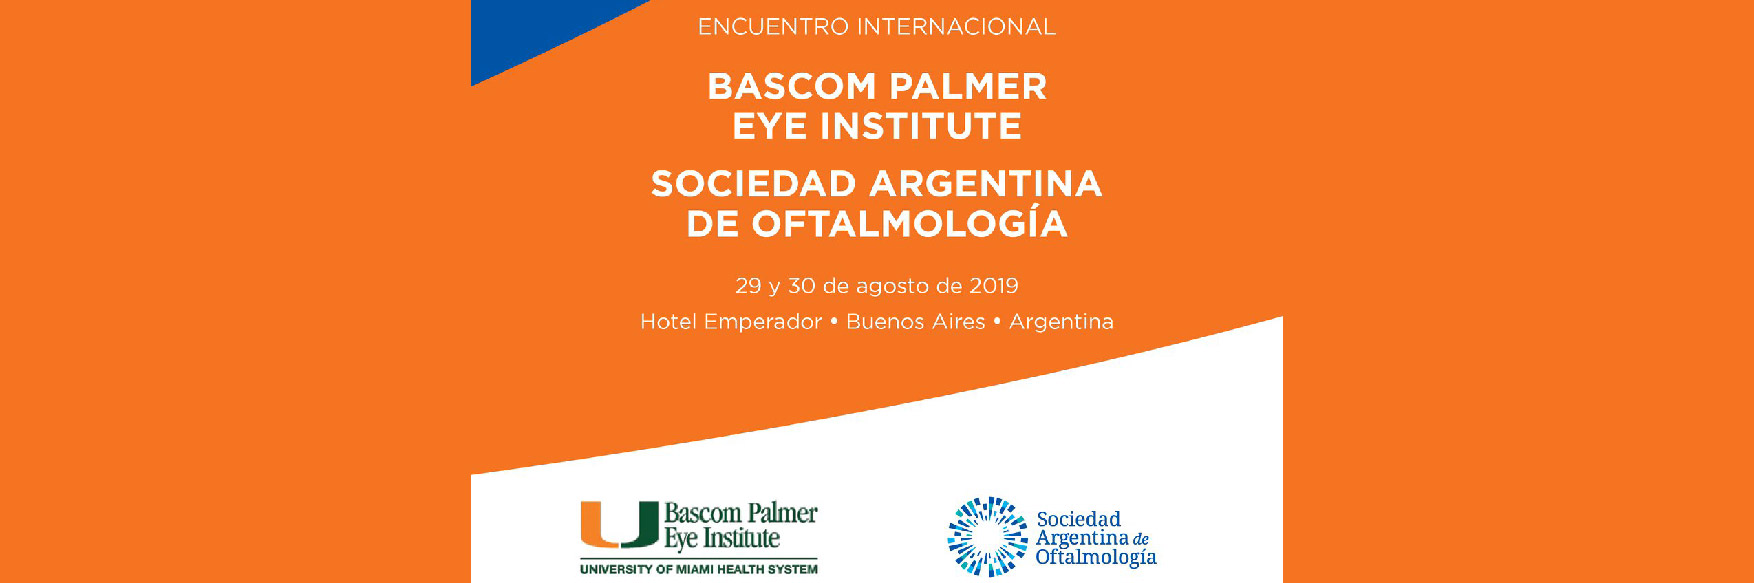 Encuentro internacional entre Bascom Palmer Eye Institute de la Universidad de Miami y la Sociedad Argentina de Oftalmología